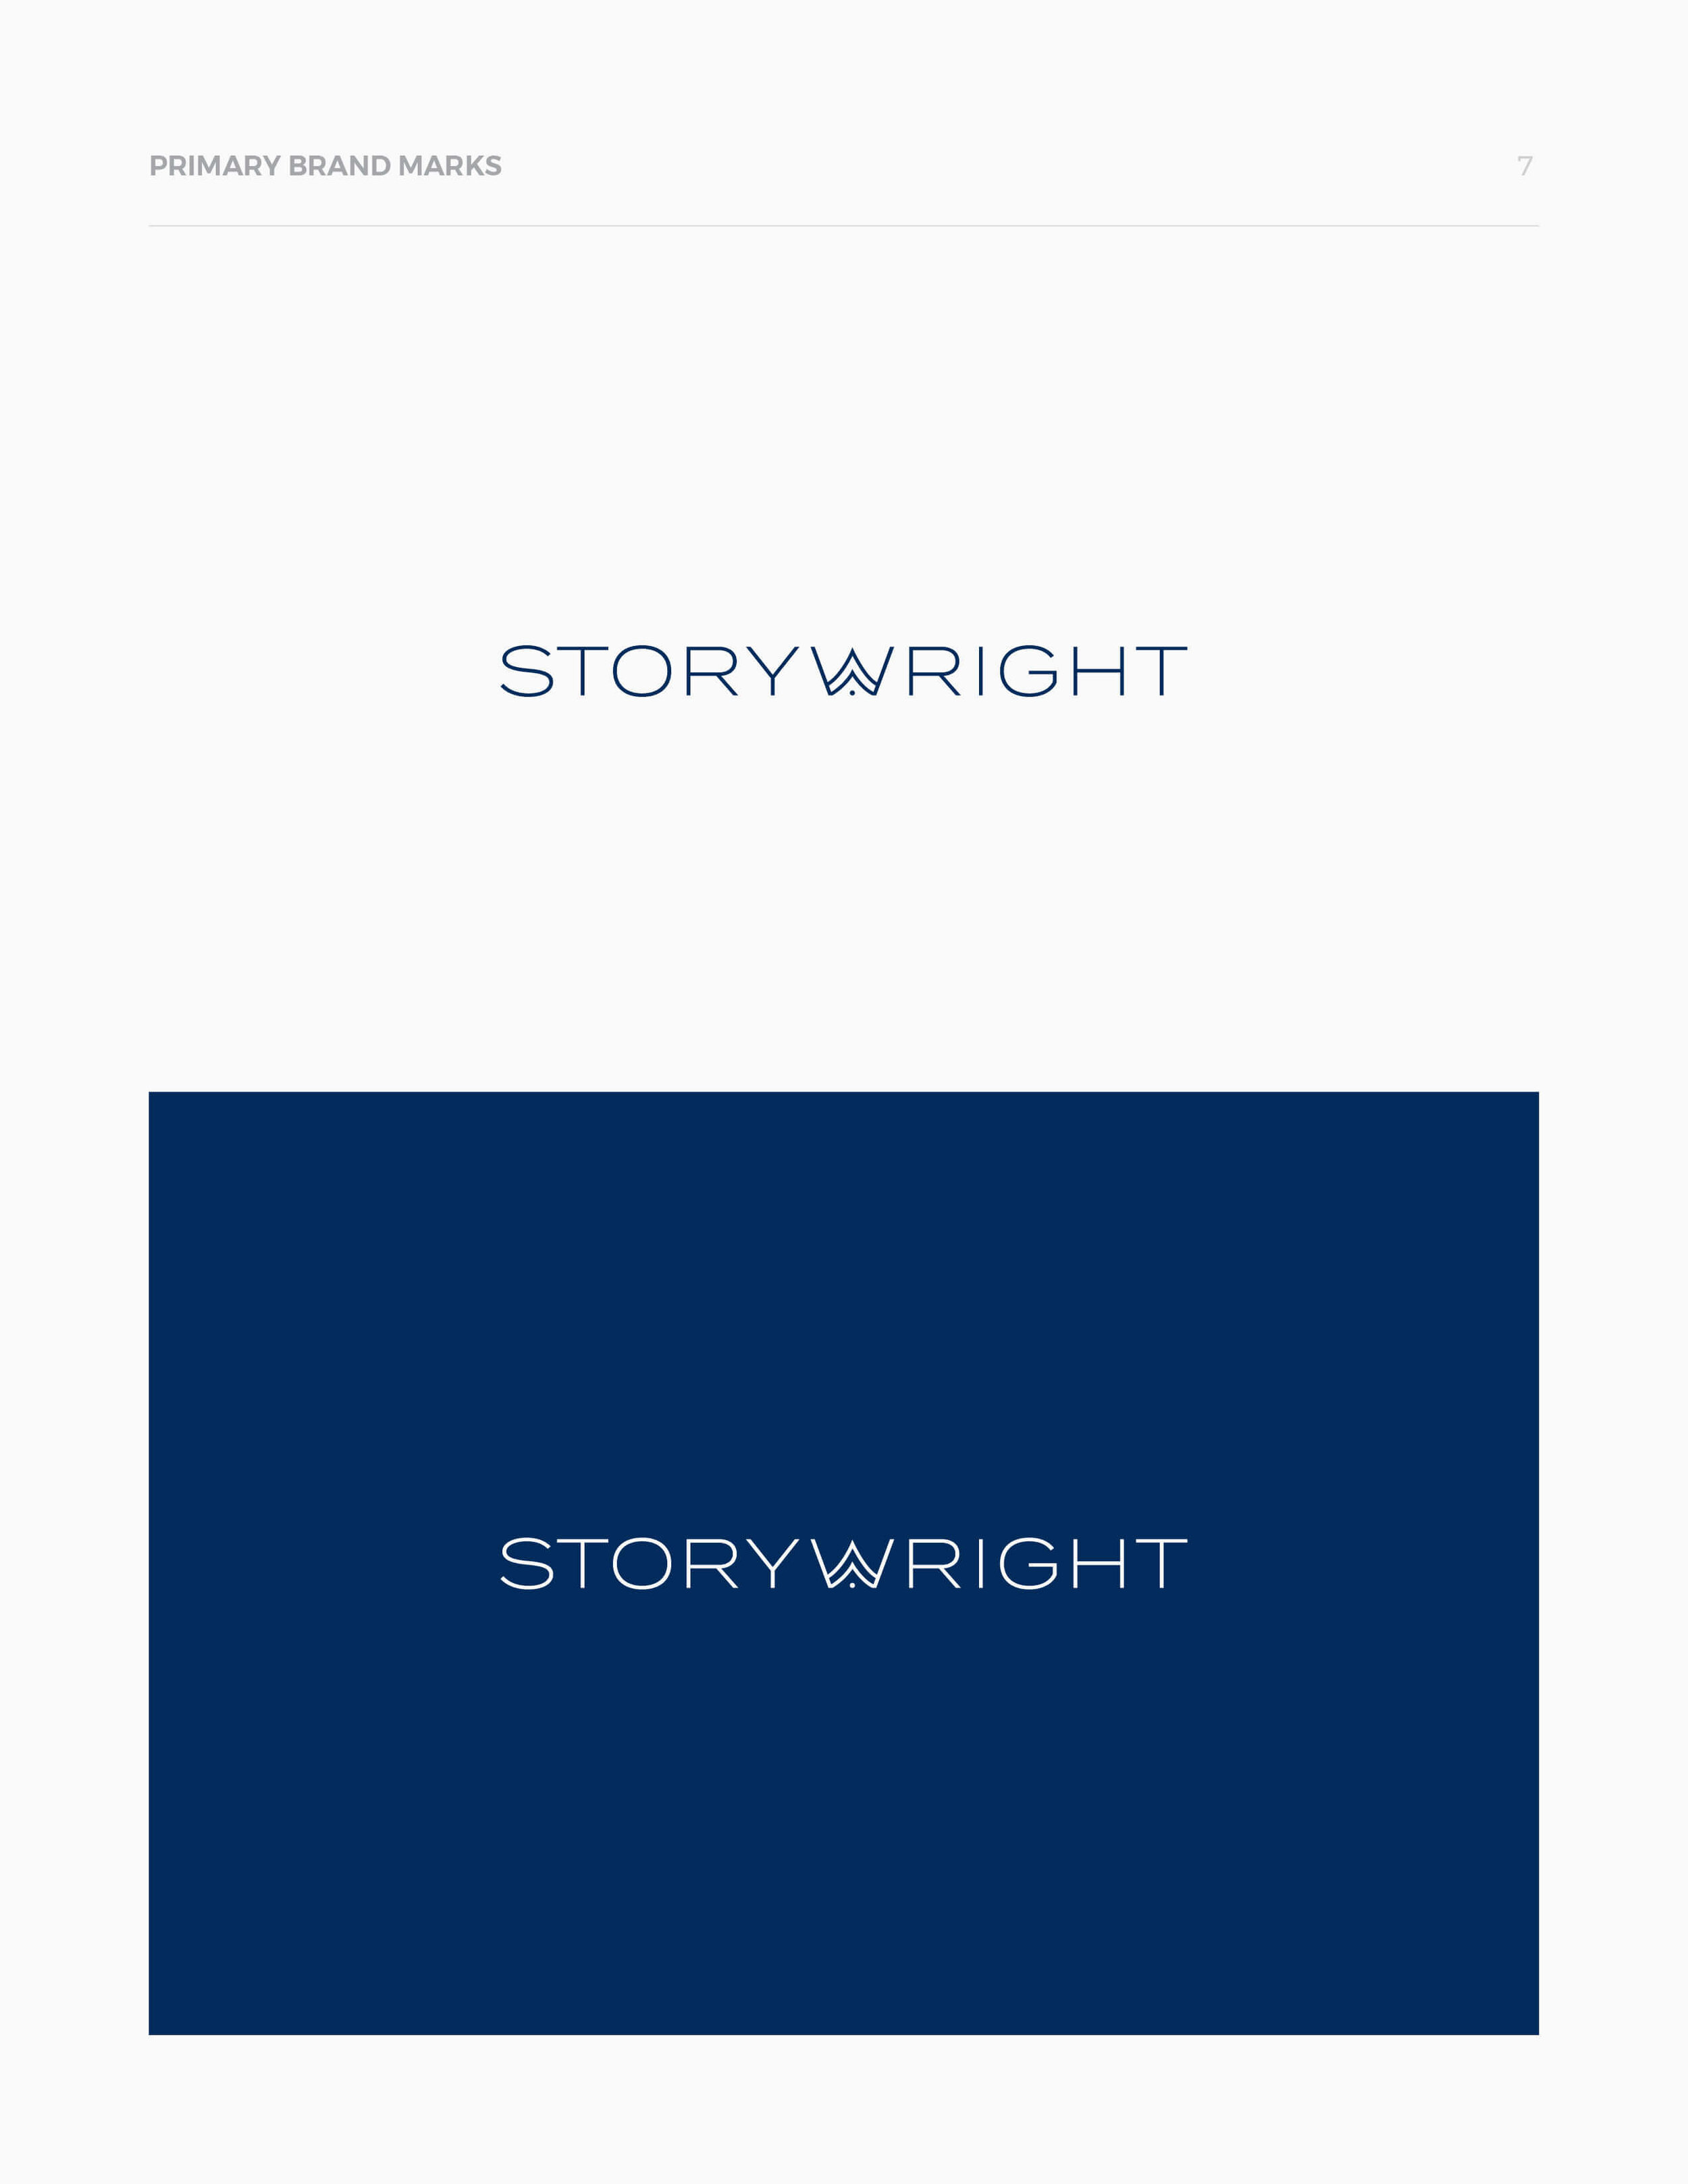 storywright-brand-design-fnl7.jpg